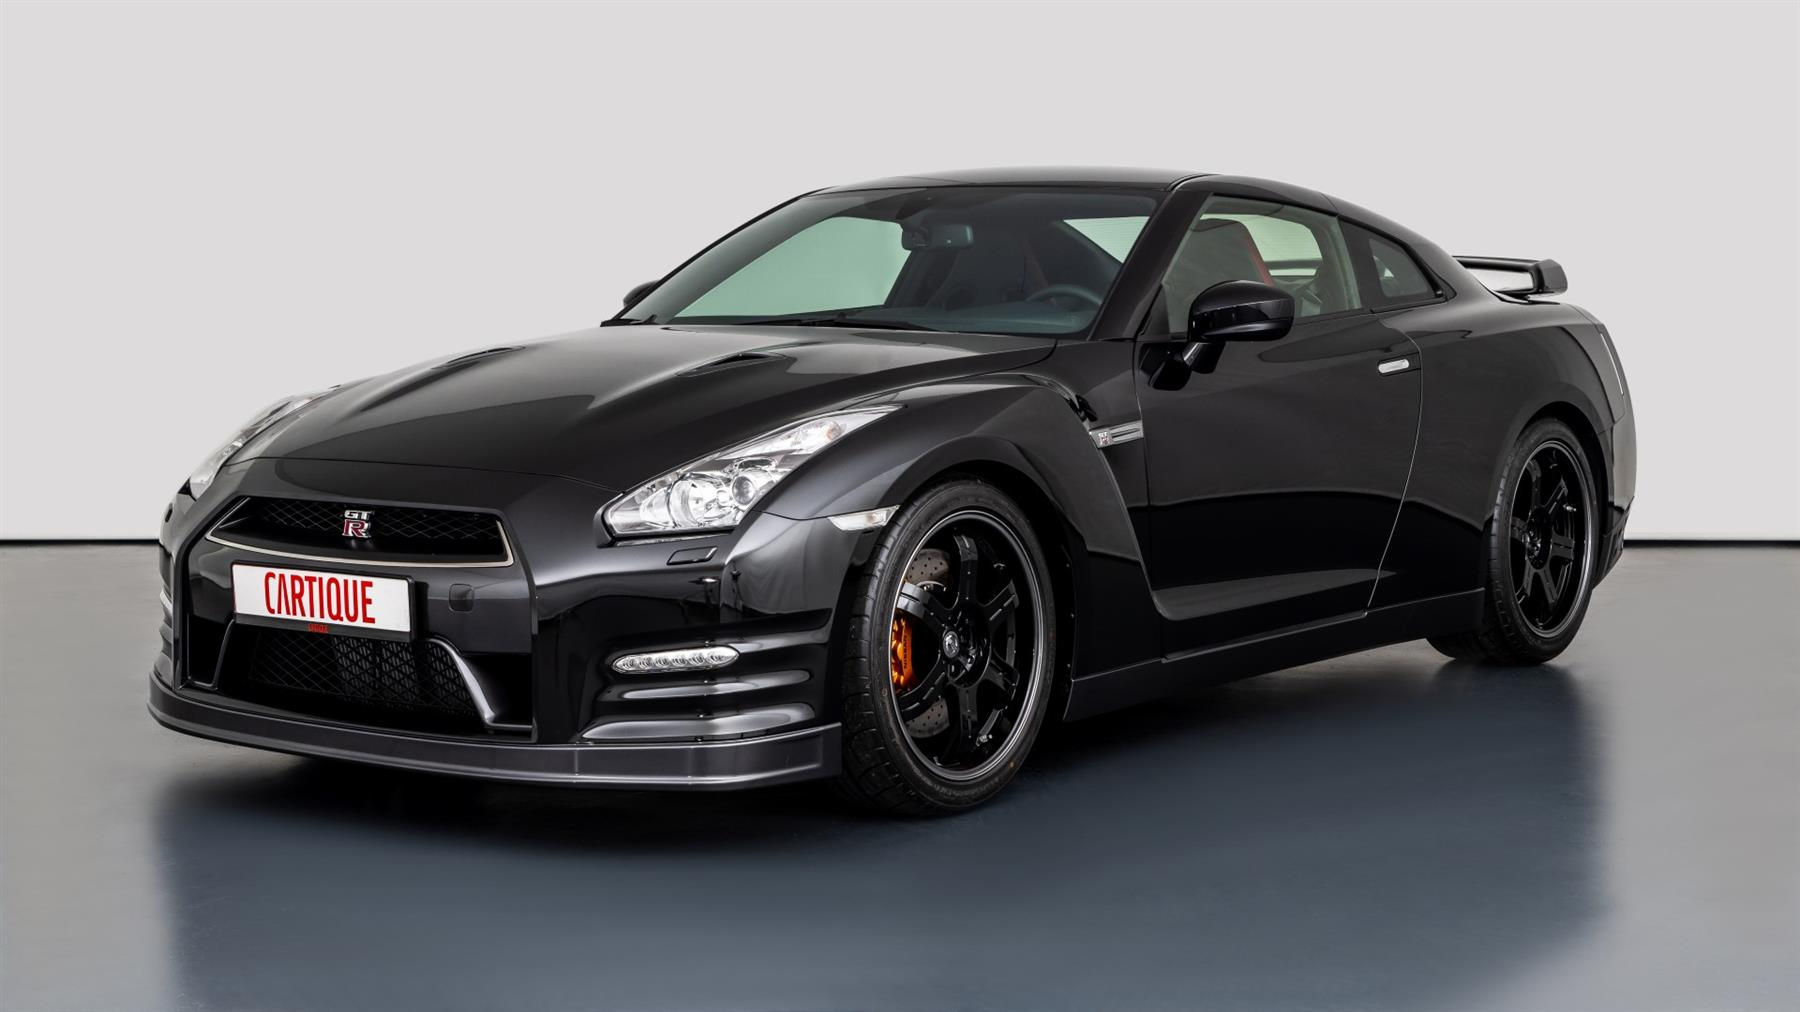 Nissan GT-R Black Edition: Với thiết kế cá tính, năng lực cực đại và tính năng hỗ trợ tối đa, Nissan GT-R Black Edition là chiếc xe đỉnh cao của sự đam mê. Không chỉ có vẻ bề ngoài đầy mê hoặc, Nissan GT-R còn sở hữu khả năng vận hành vượt trội, giúp bạn nhận được cảm giác lái xe đích thực.